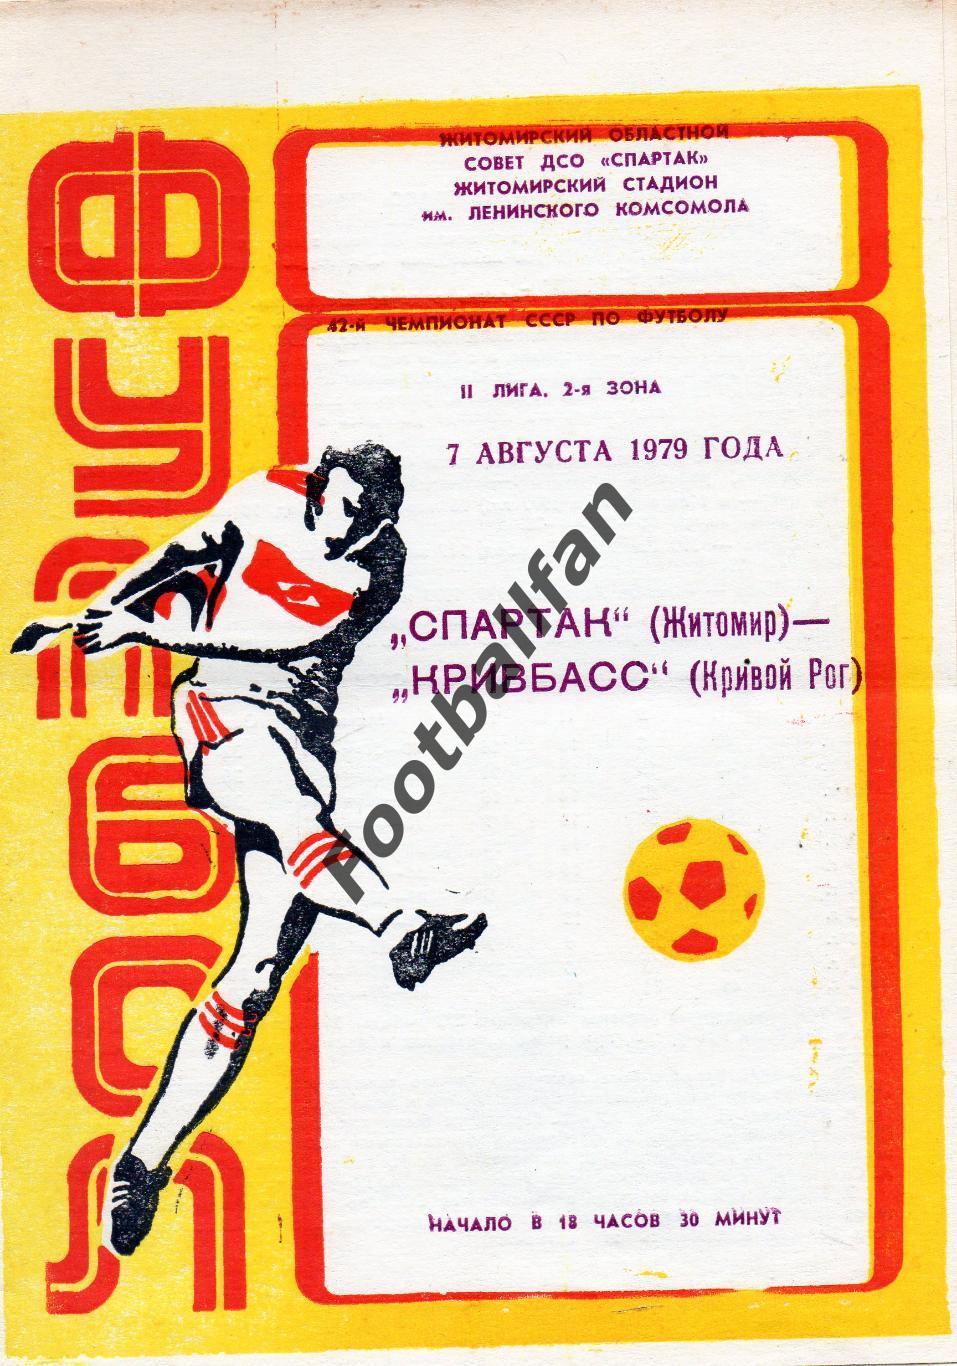 Спартак Житомир - Кривбасс Кривой Рог 07.08.1979